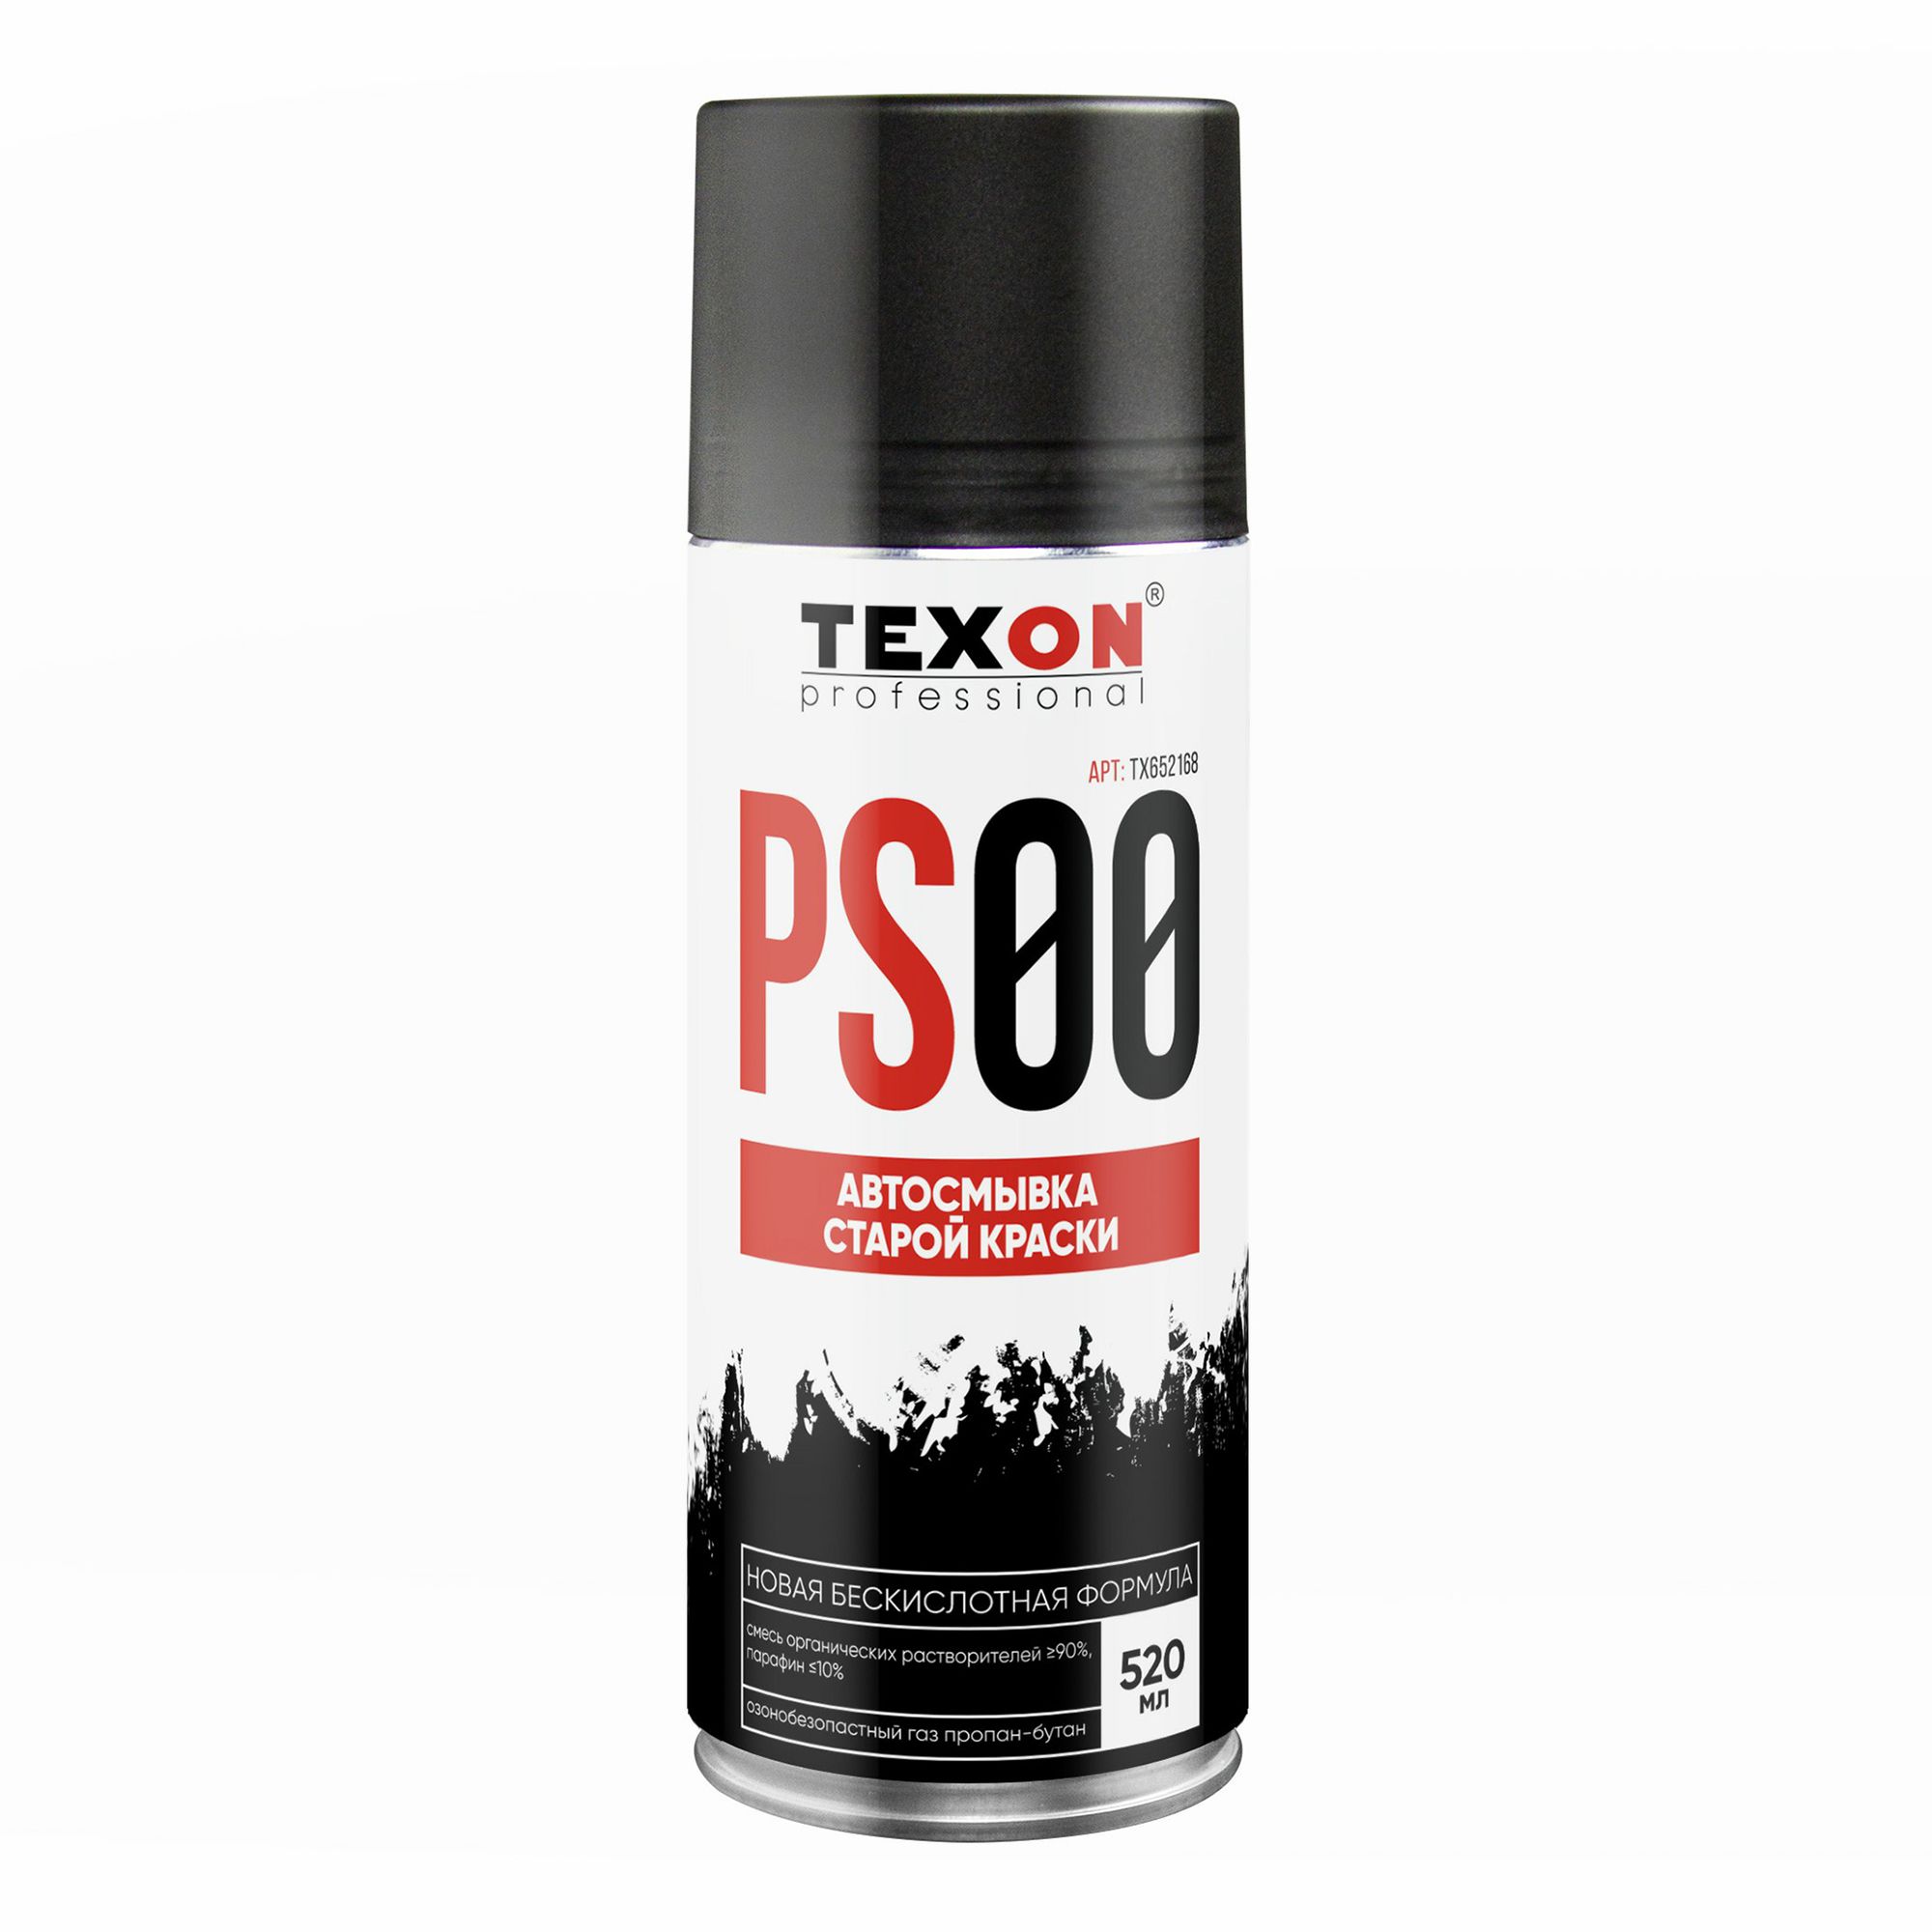 Очиститель Texon Автосмывка старой краски 520 мл очиститель электронных контактов texon